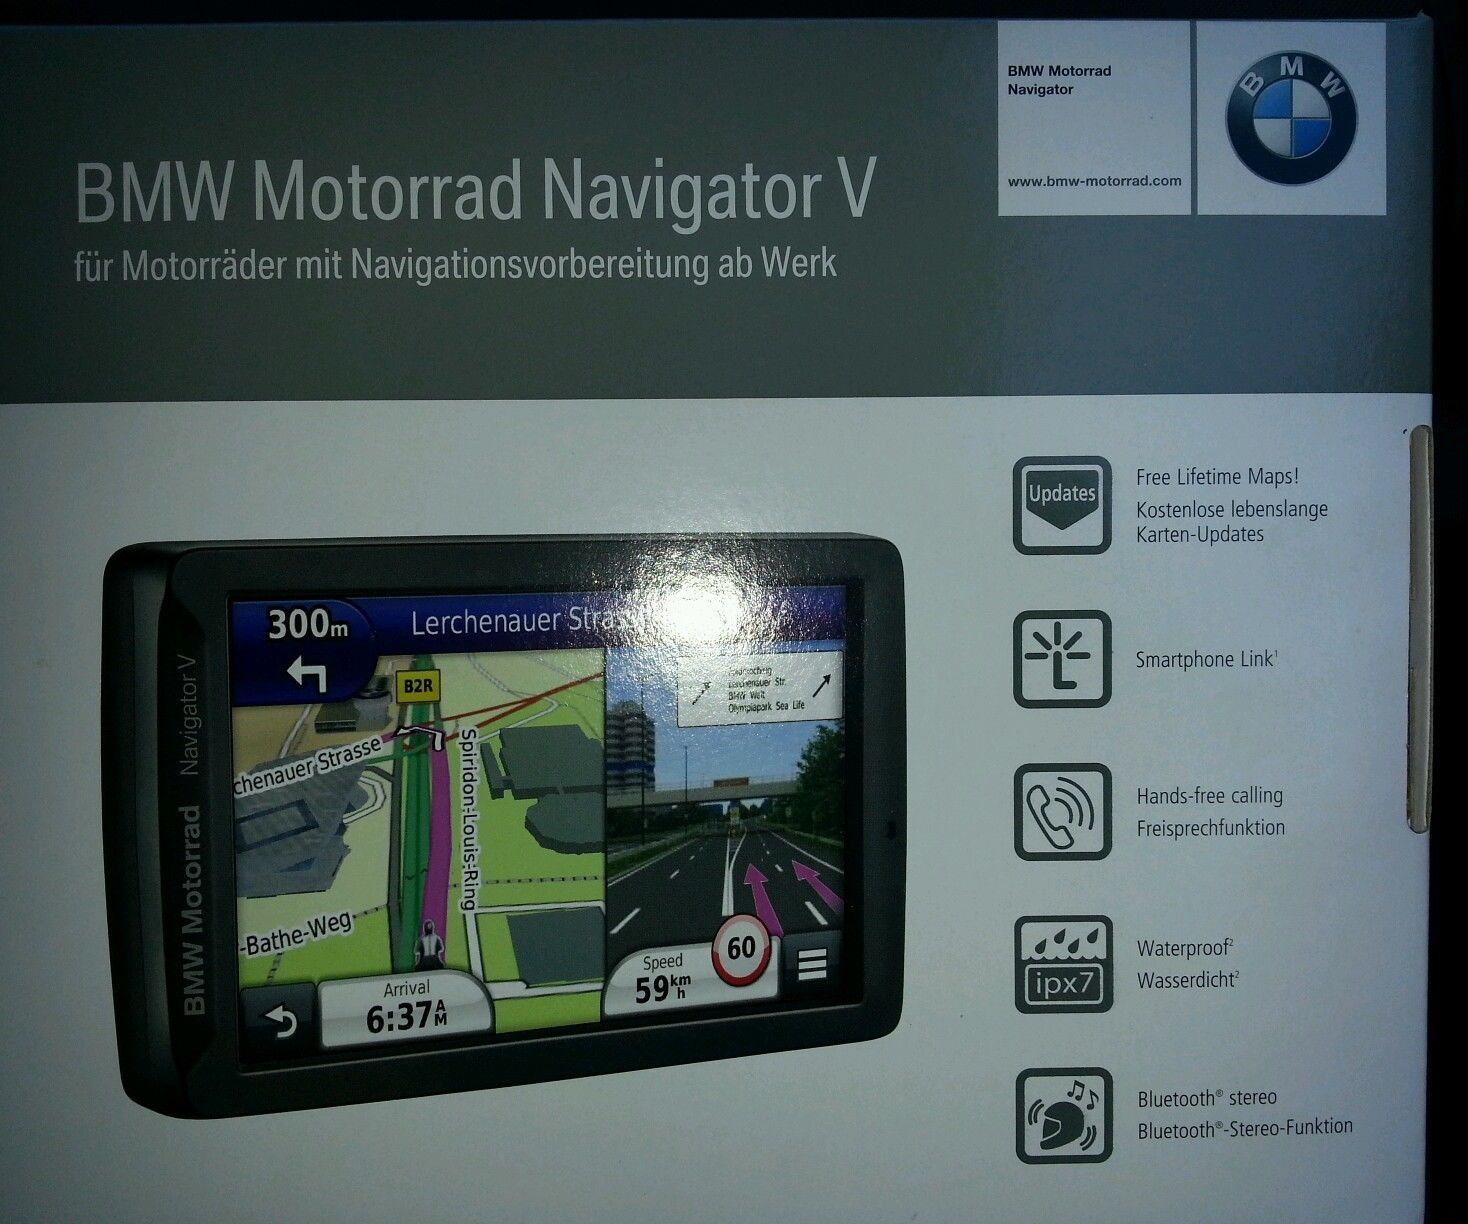 Bmw motorrad navigator ii software update #3